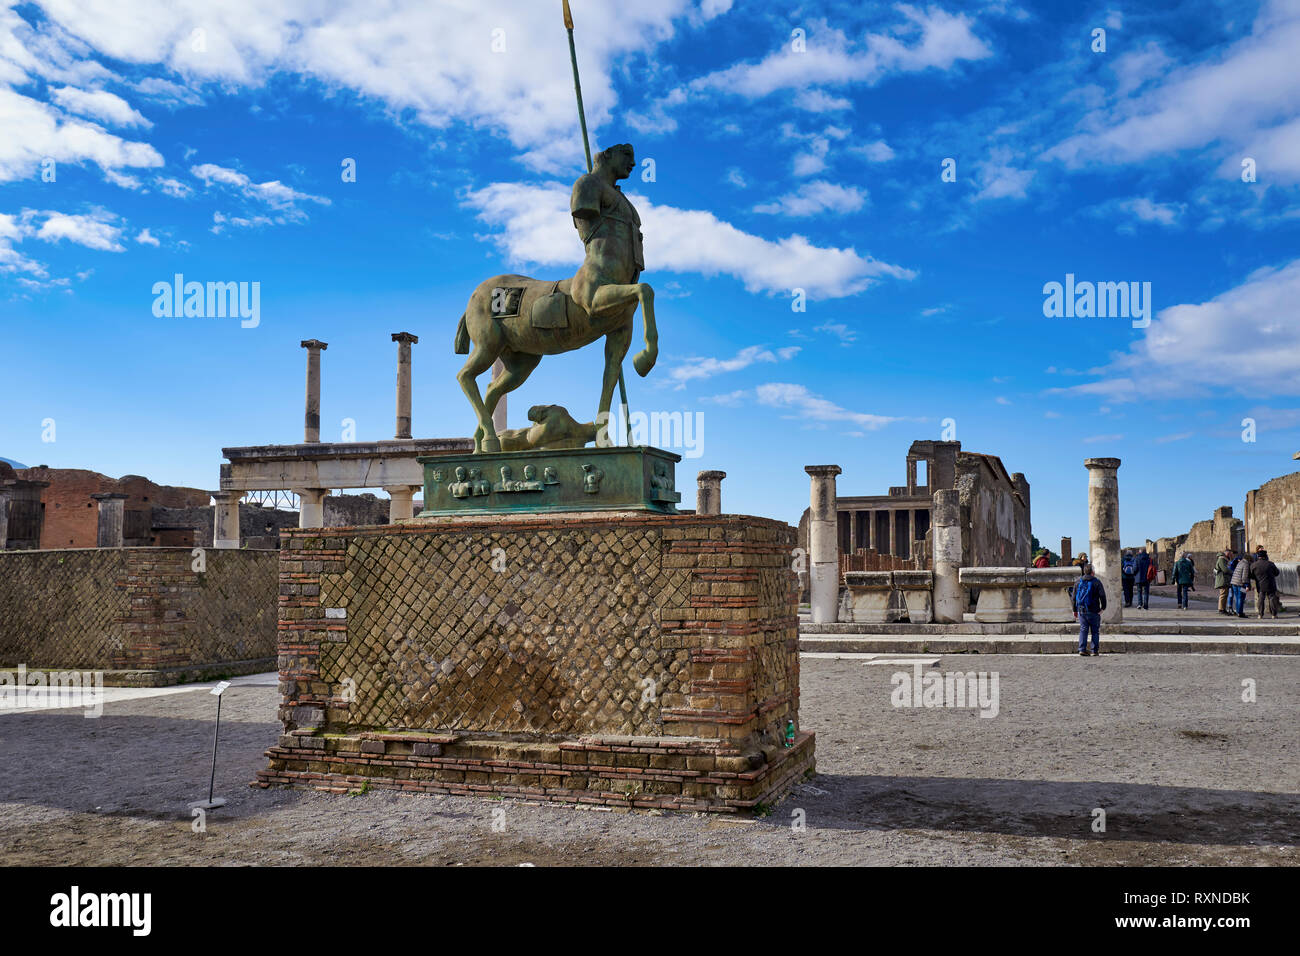 Napoles Italia. Pompeya fue una antigua ciudad romana moderna cerca de Nápoles, en la región de Campania de Italia, en el territorio de la comuna de Pompeya. Foto de stock